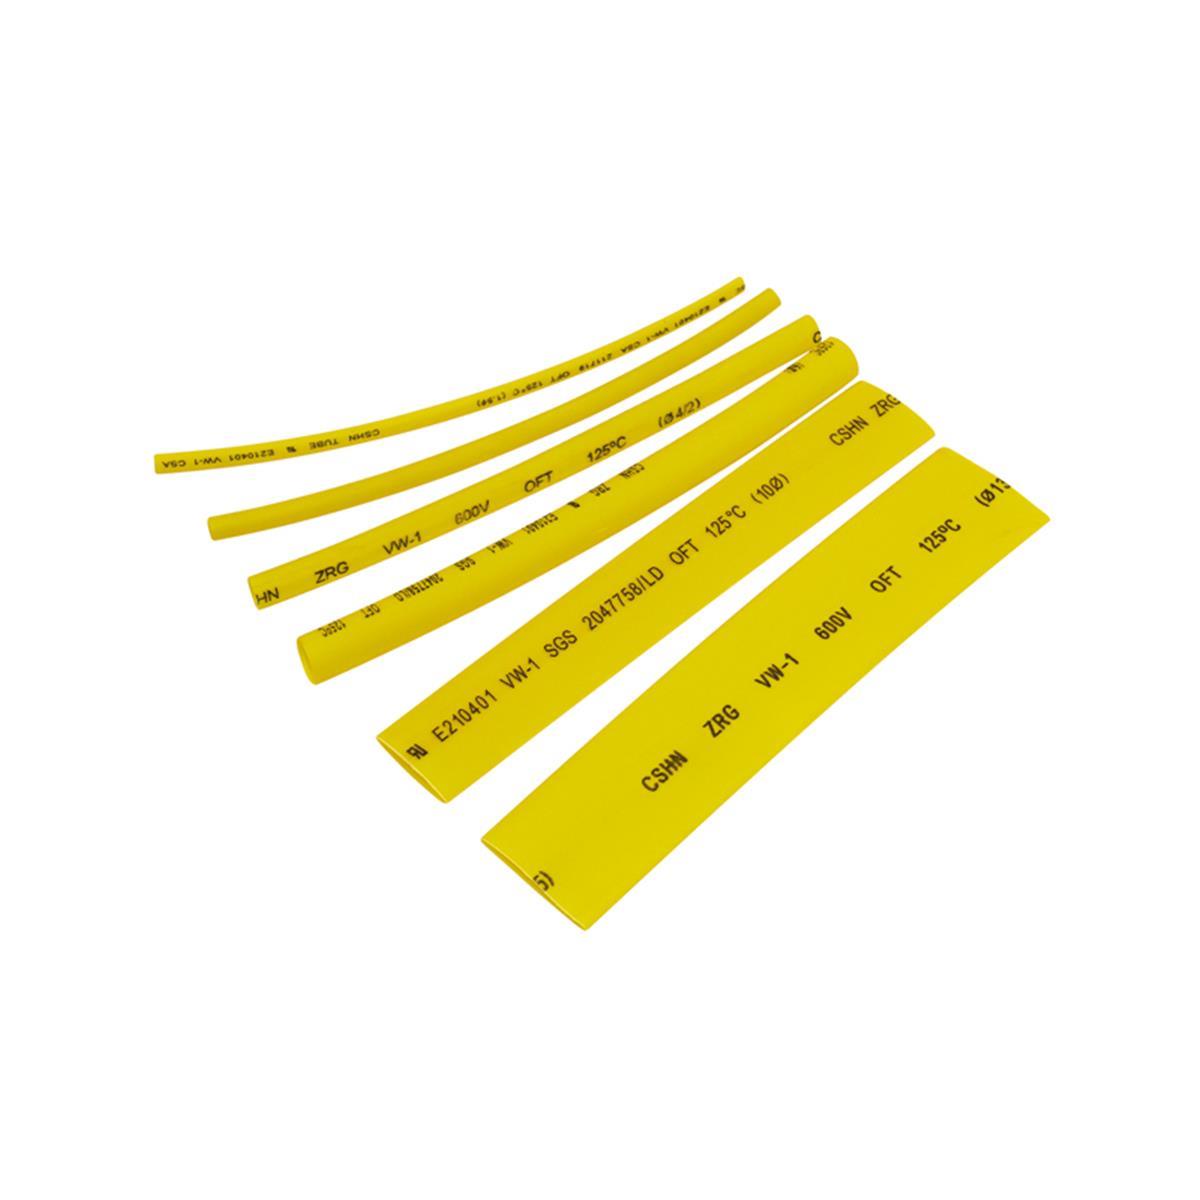 Schrumpfschlauch-Sortiment, 100-teilig in Sortimentstüte, gelb